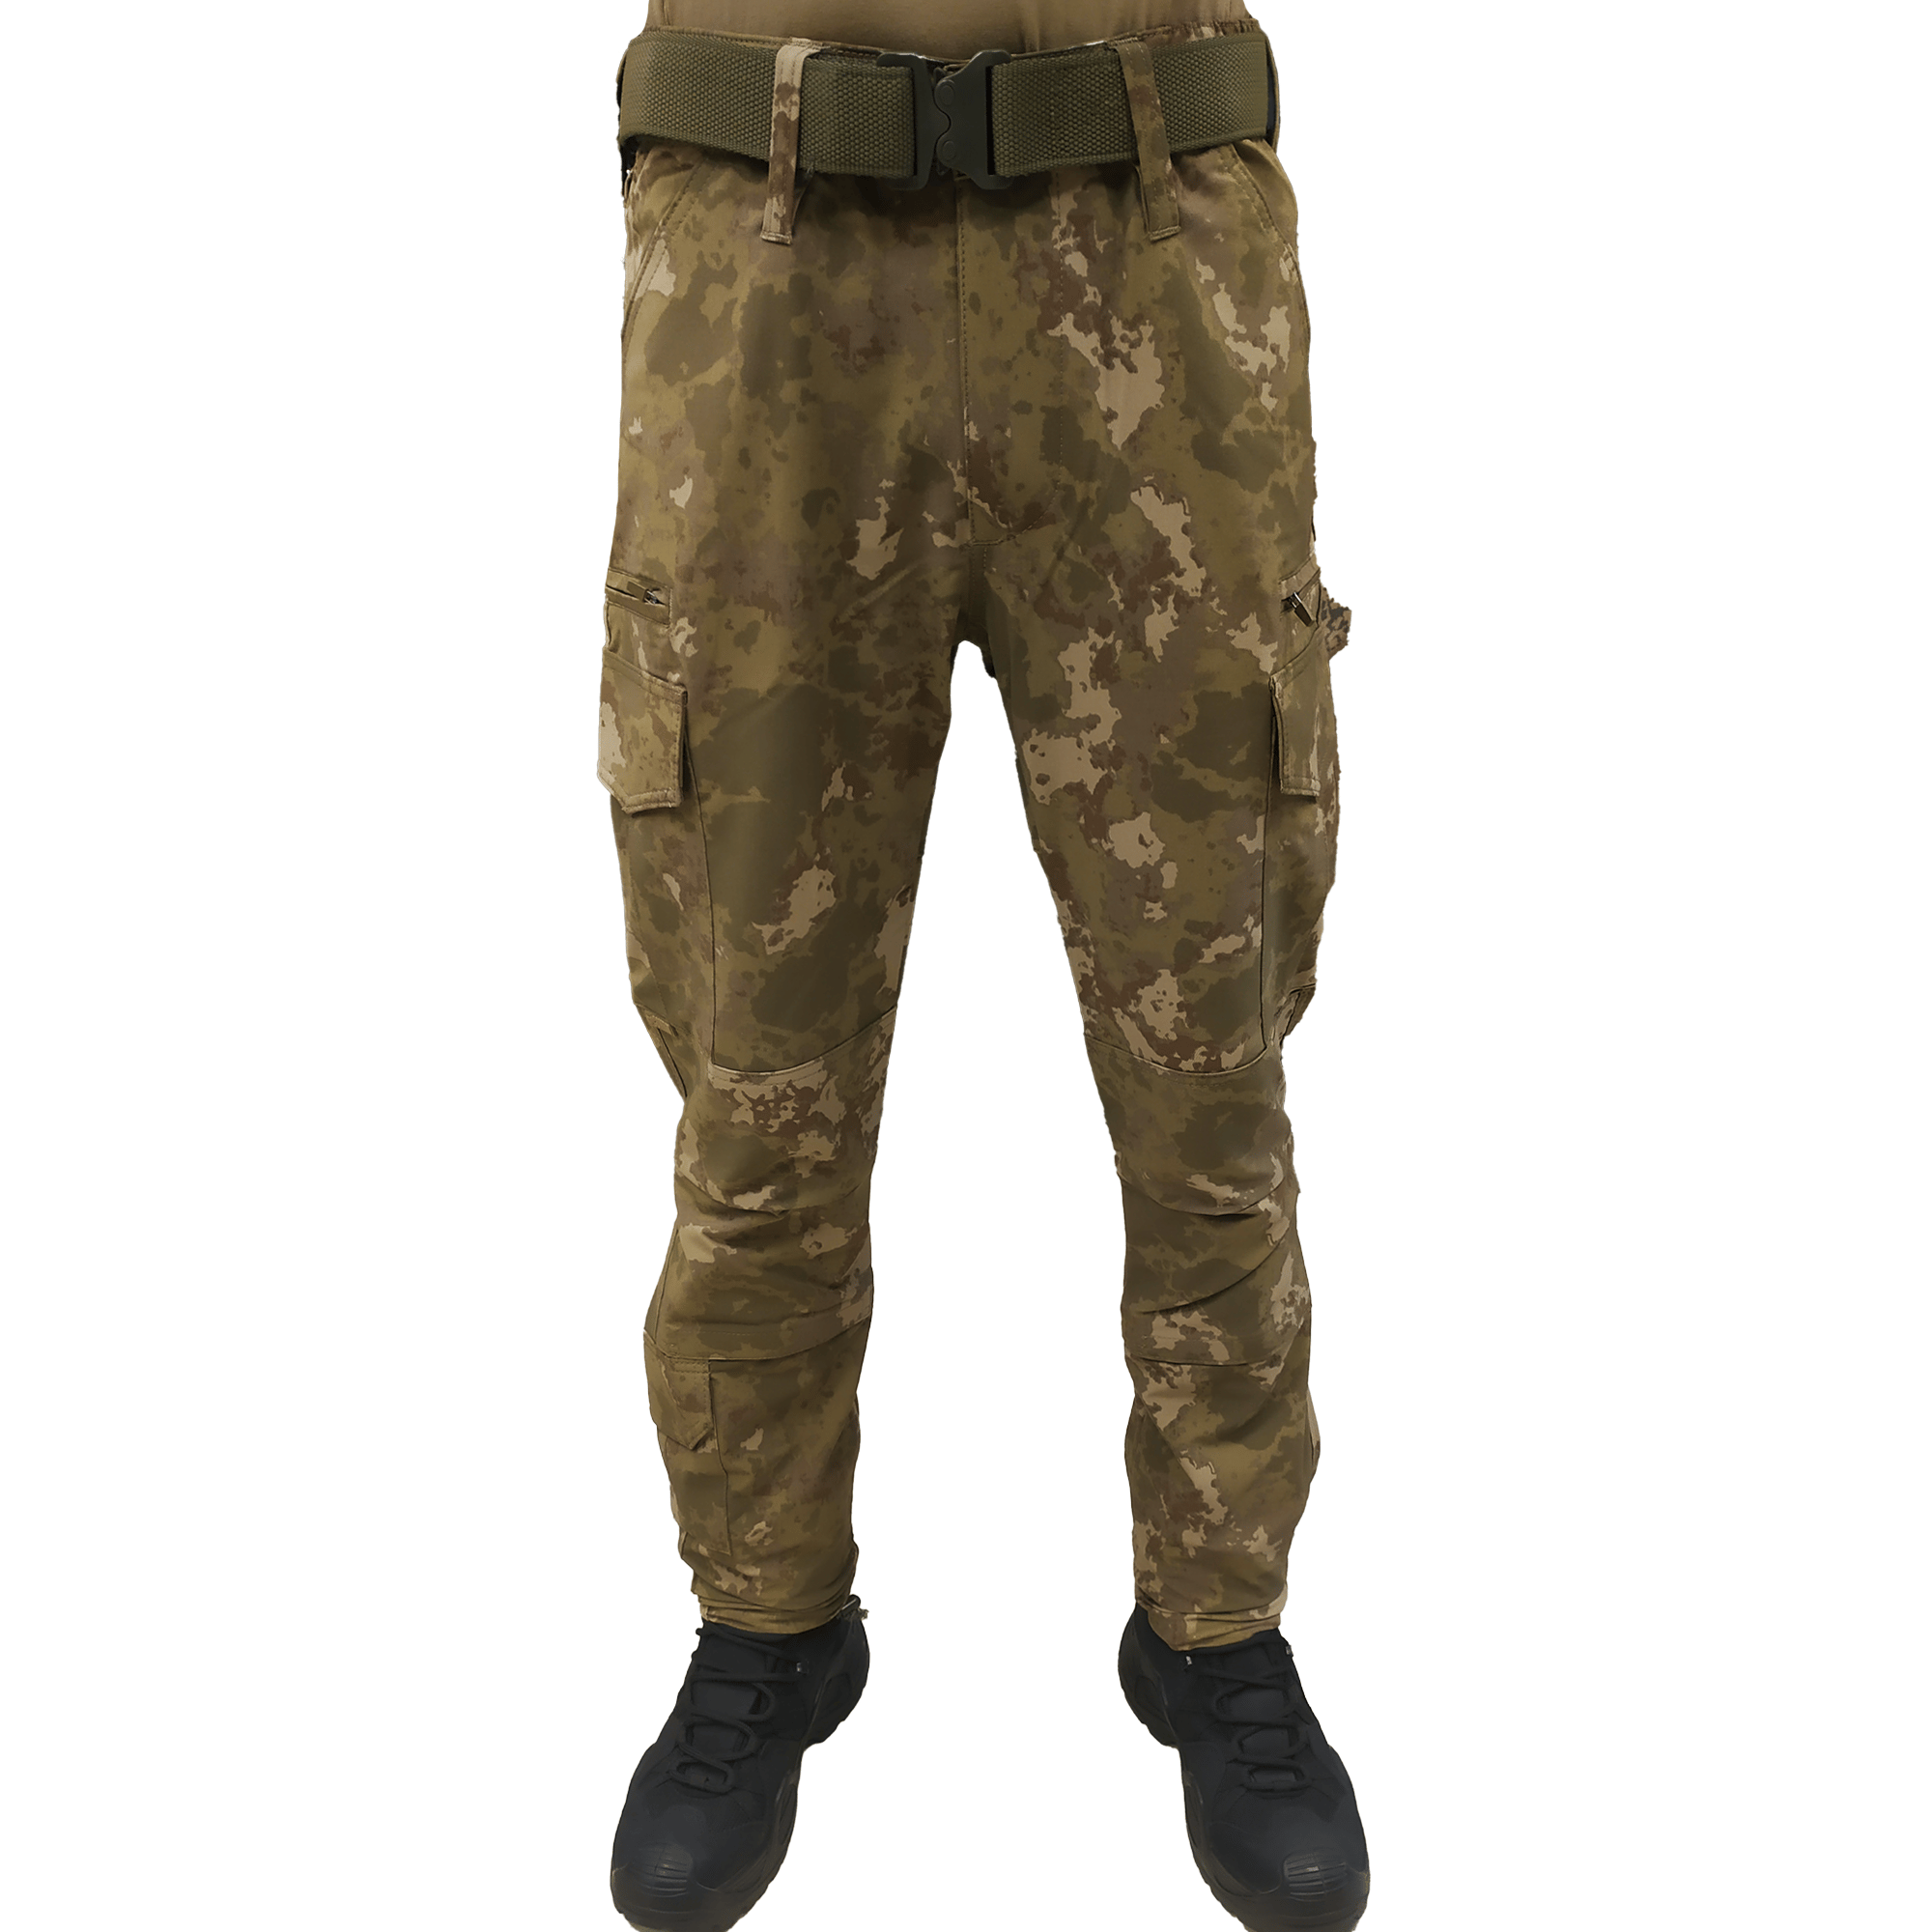 7 Cepli Askeri Kamuflaj Desenli Pantolon, Piyade Kamuflaj Pantolon |  Kamuflaj Pantolon Modelleri Ve Fiyatları